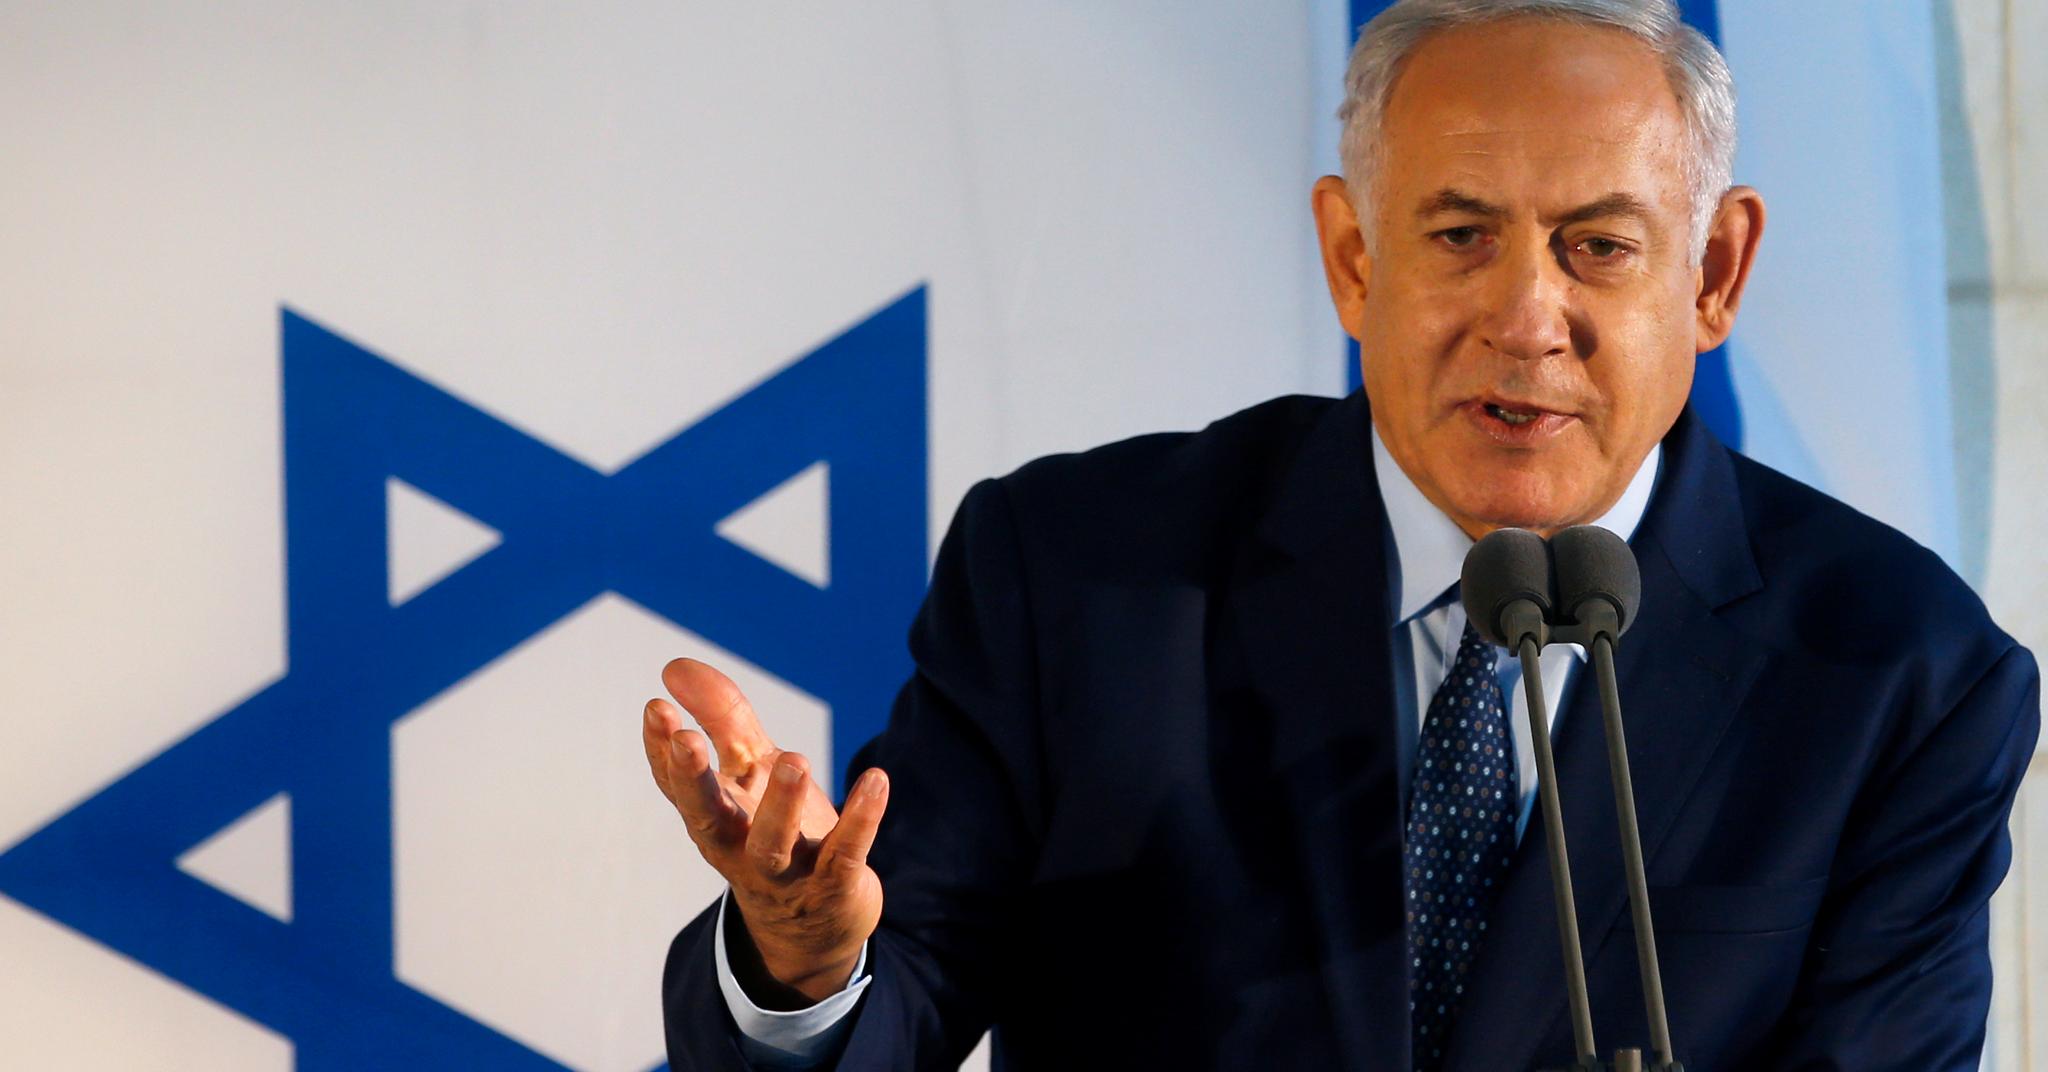  Granavolden-plattformen er et solid skulderklapp til Benjamin Netanyahus kompromissløse Israel. Og en Midtøsten-politikk som ikke henger sammen. Det er uklokt, skriver Harald Stanghelle. 